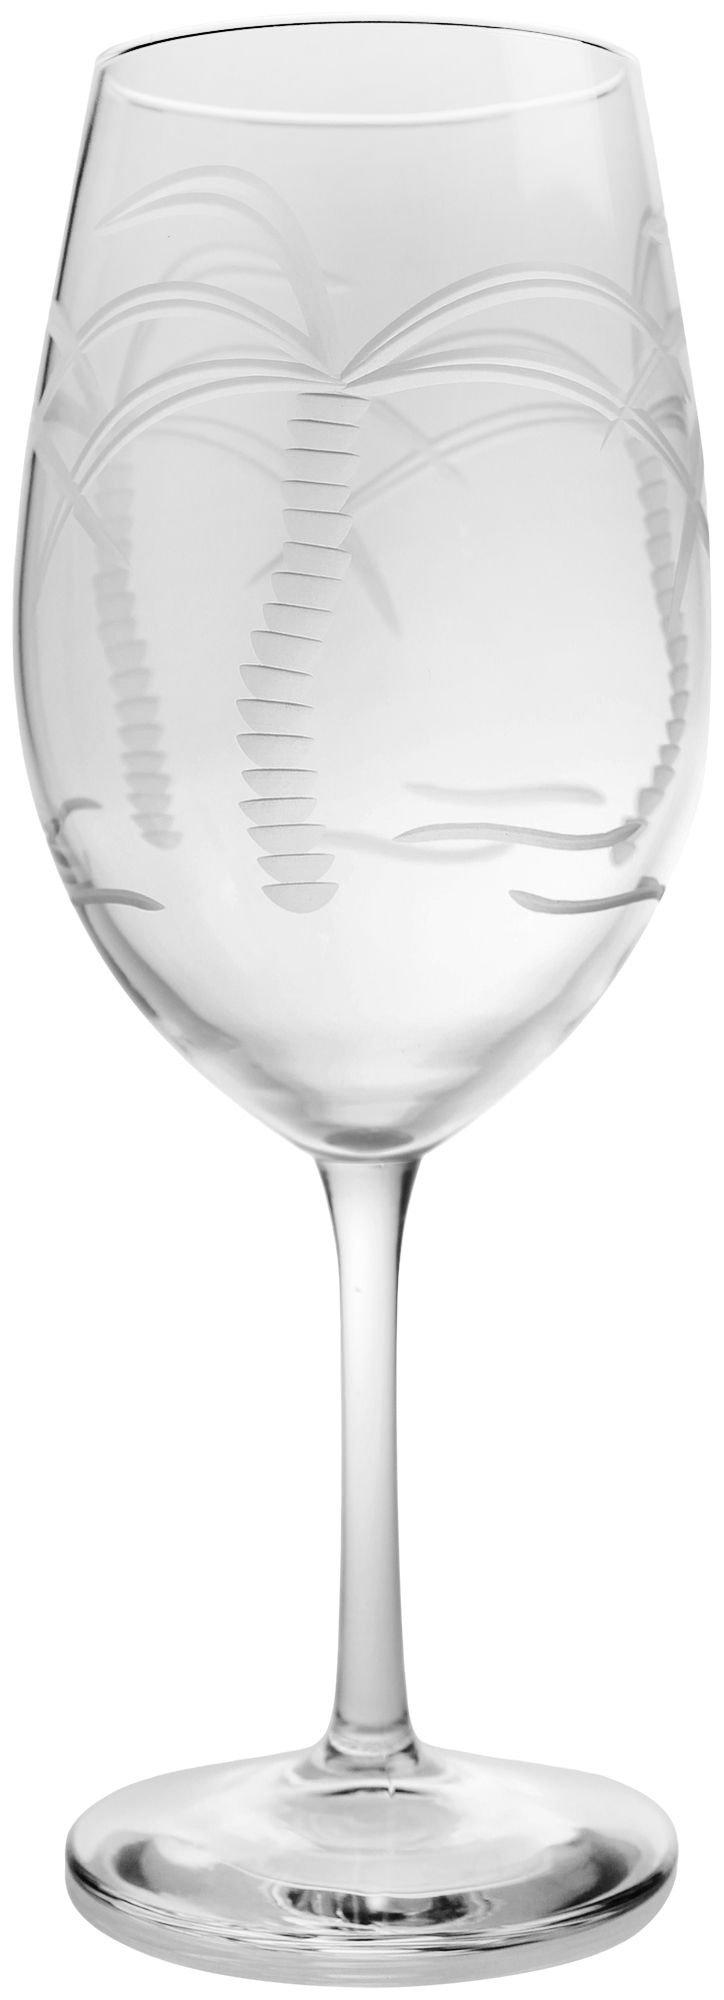 18 oz. Palm Tree Wine Goblet